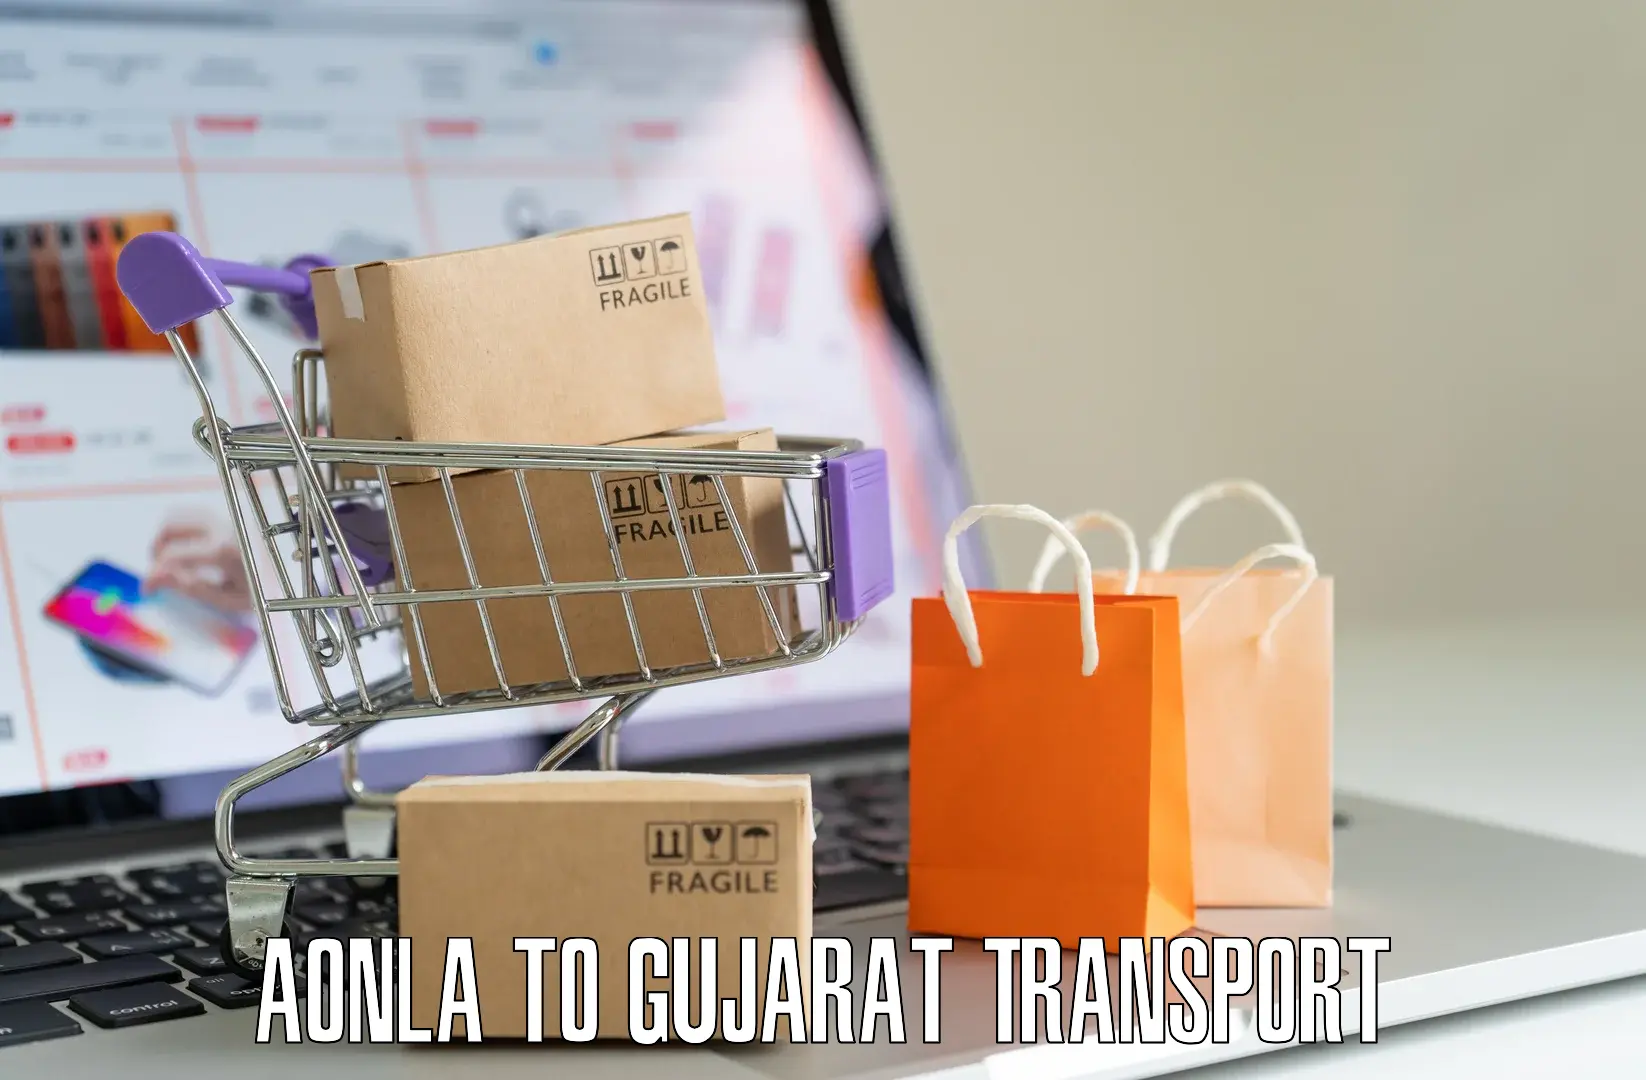 Door to door transport services in Aonla to Gujarat